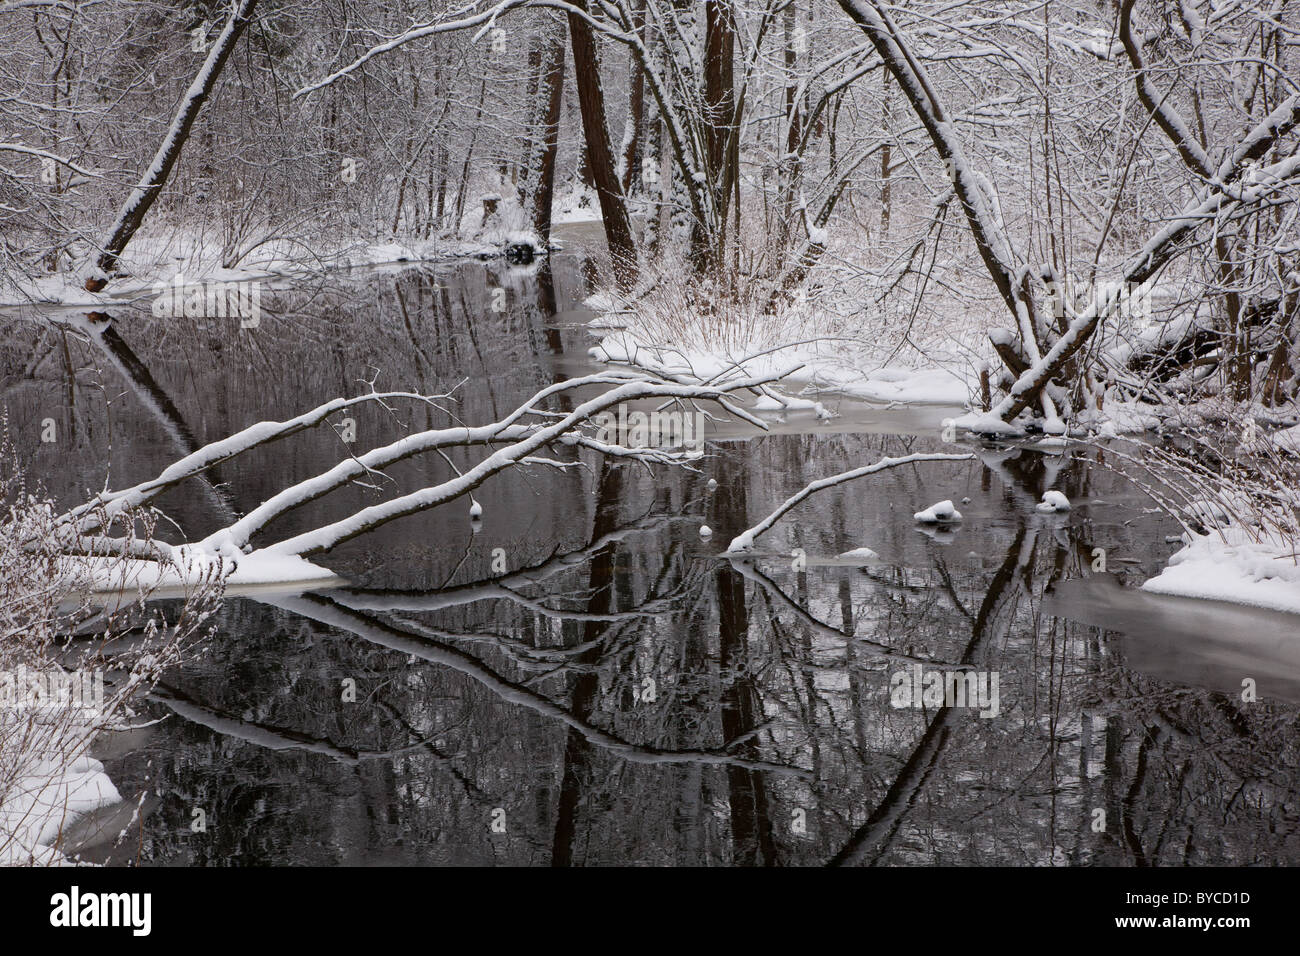 Snowy bosque ribereño a lo largo de río con aliso y roto una mentira Foto de stock